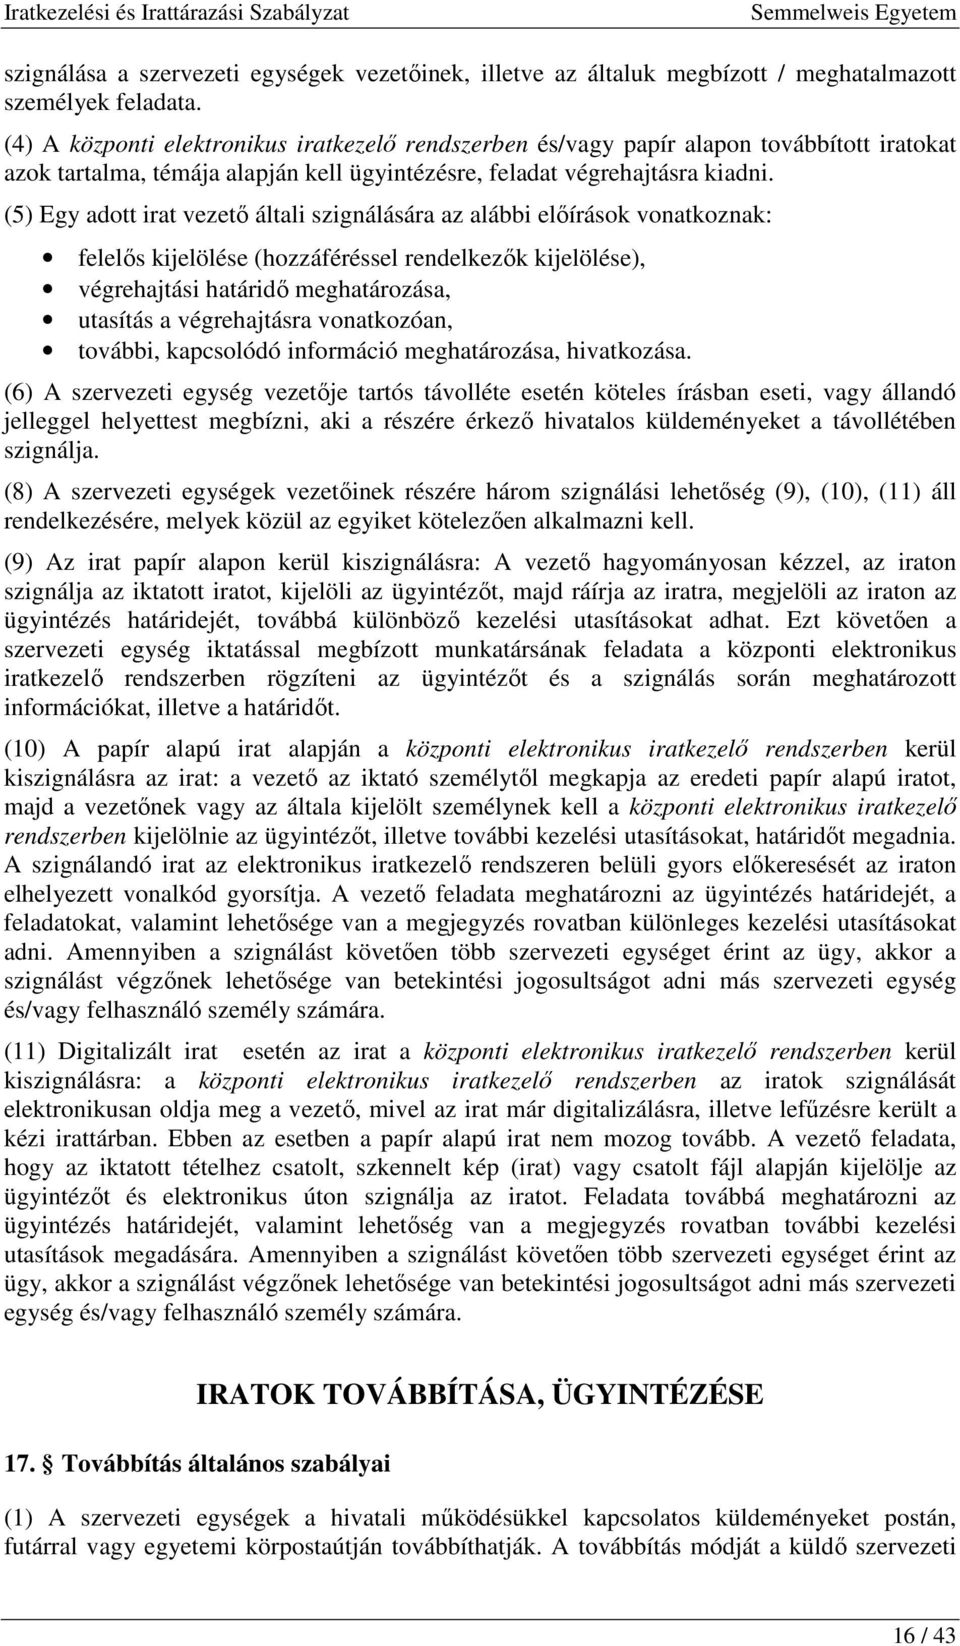 (5) Egy adott irat vezetı általi szignálására az alábbi elıírások vonatkoznak: felelıs kijelölése (hozzáféréssel rendelkezık kijelölése), végrehajtási határidı meghatározása, utasítás a végrehajtásra